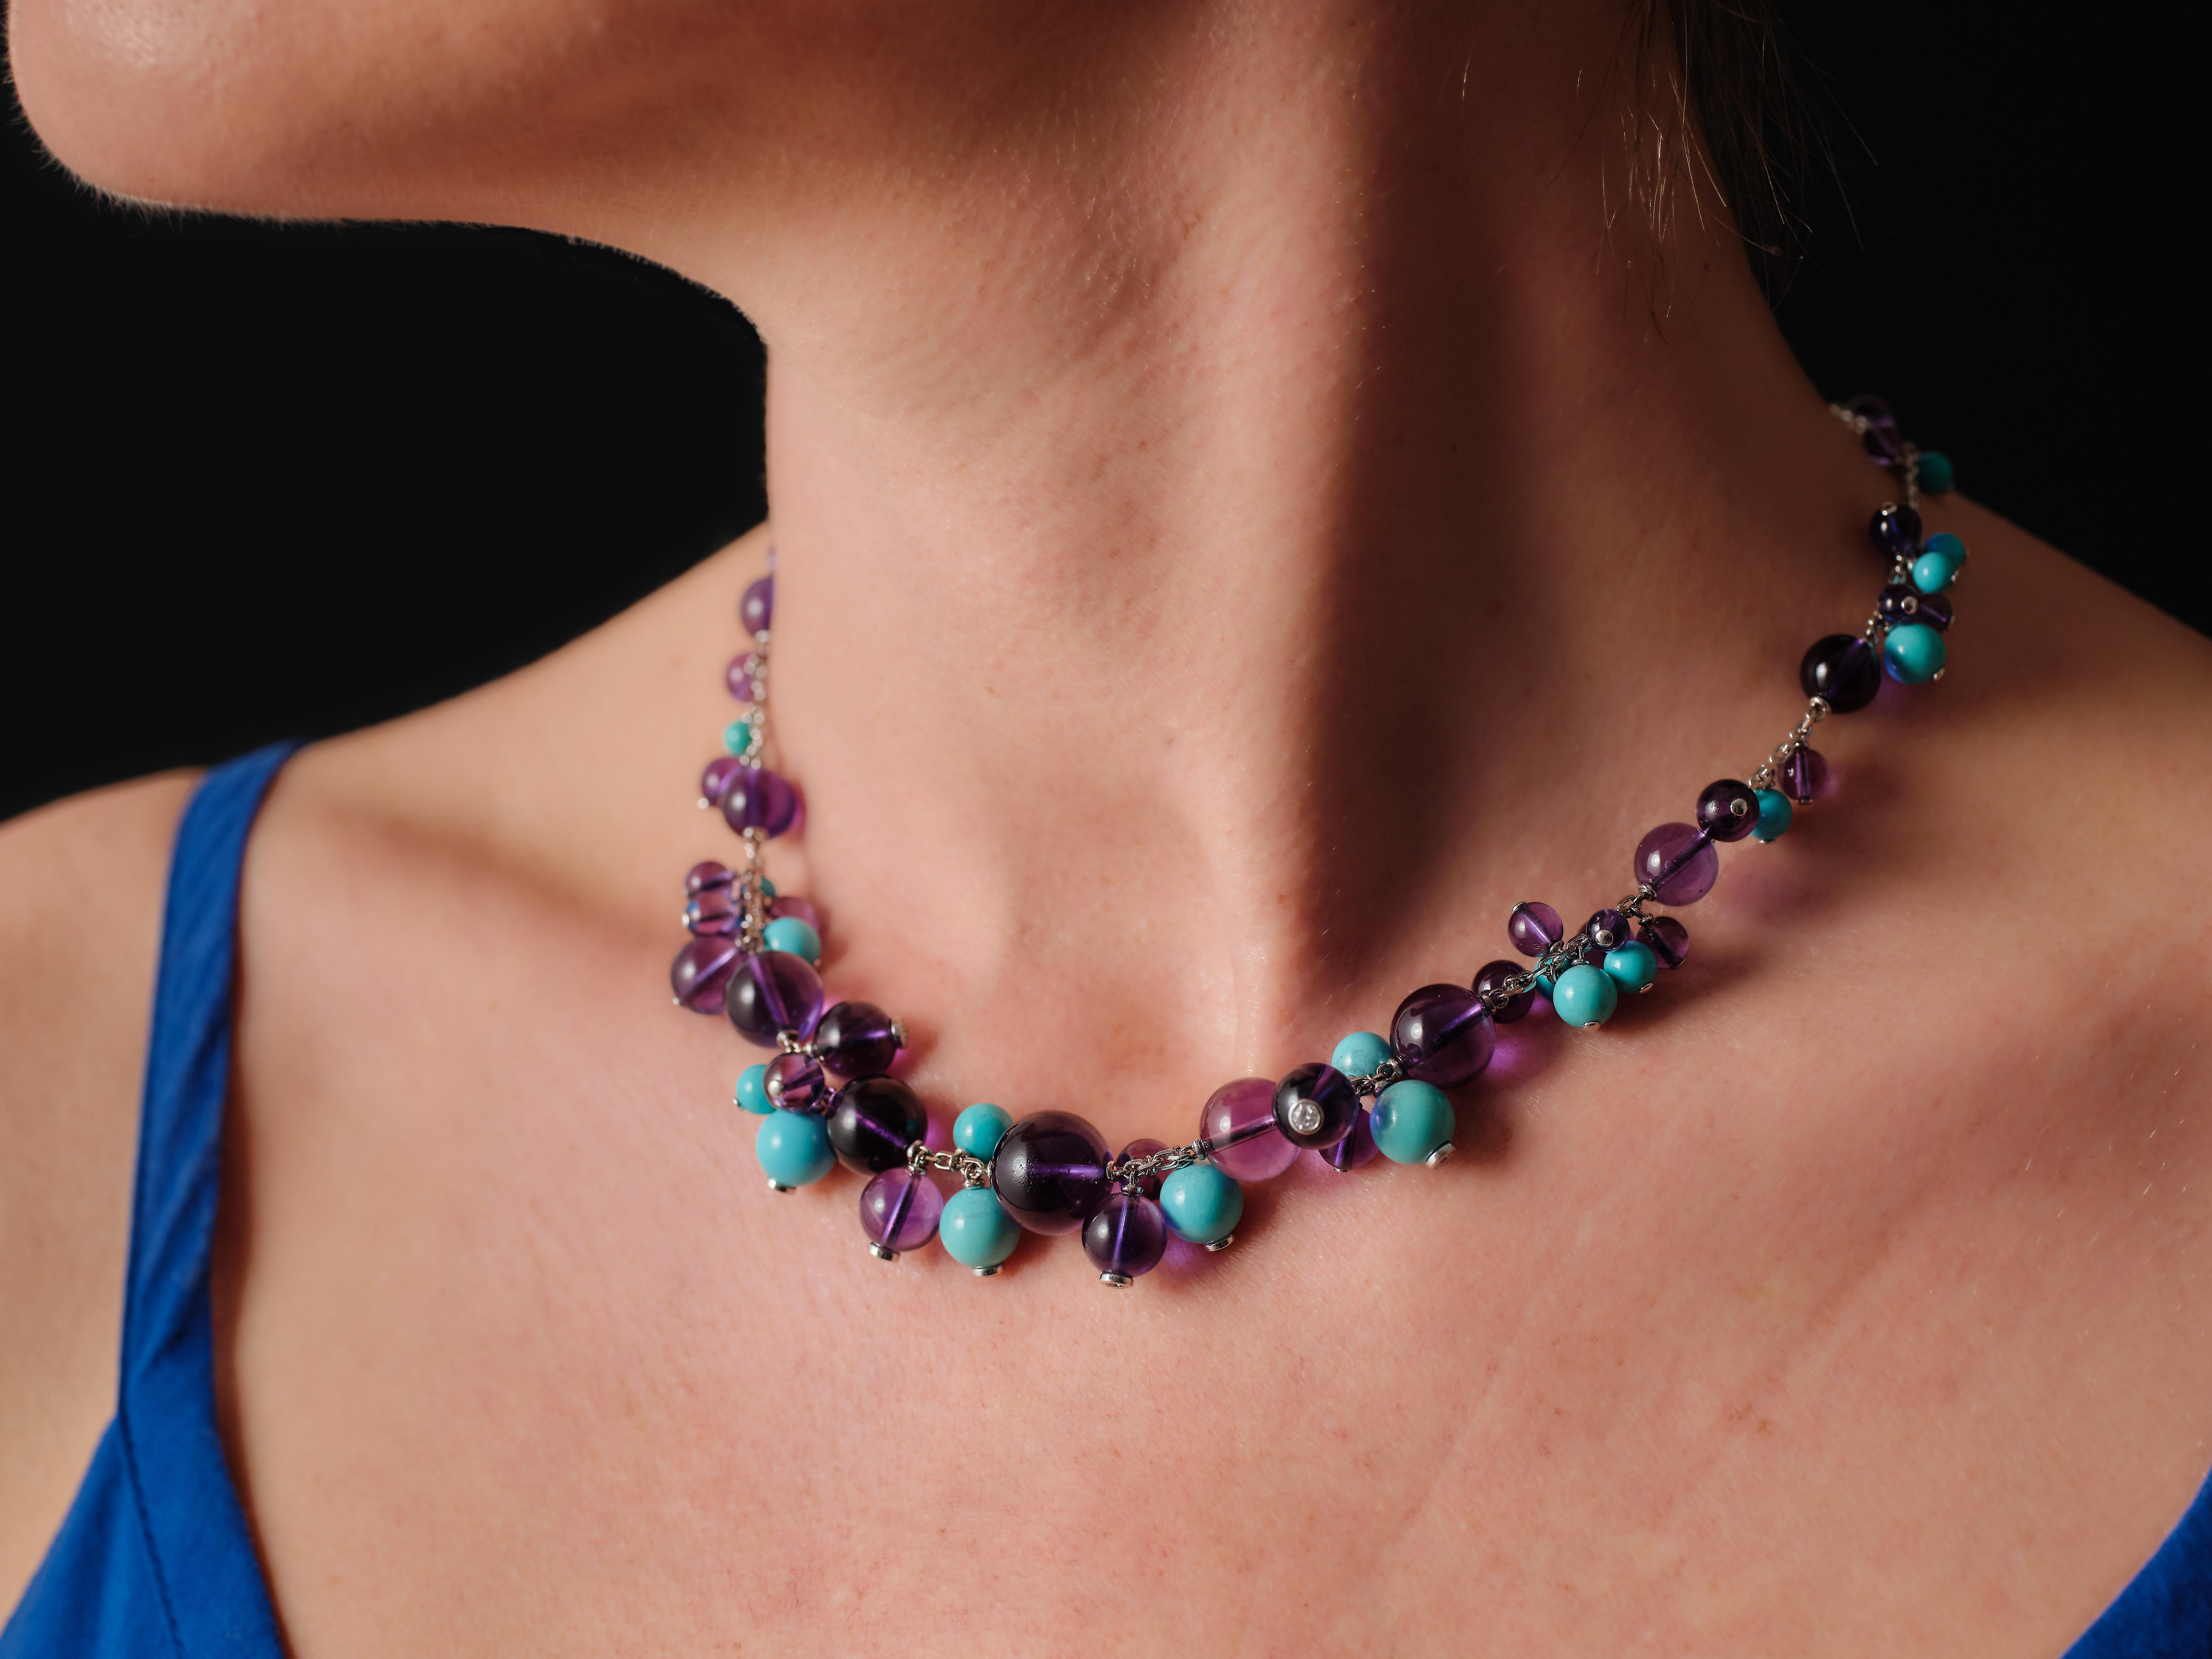 Par l'inimitable Maison Cartier, collier 'Délices de Goa' orné d'une succession de perles, turquoises et améthystes dont certaines sont enrichies de diamants taille brillant. De délicieuses baies auxquelles on ne peut résister ! La collection Les